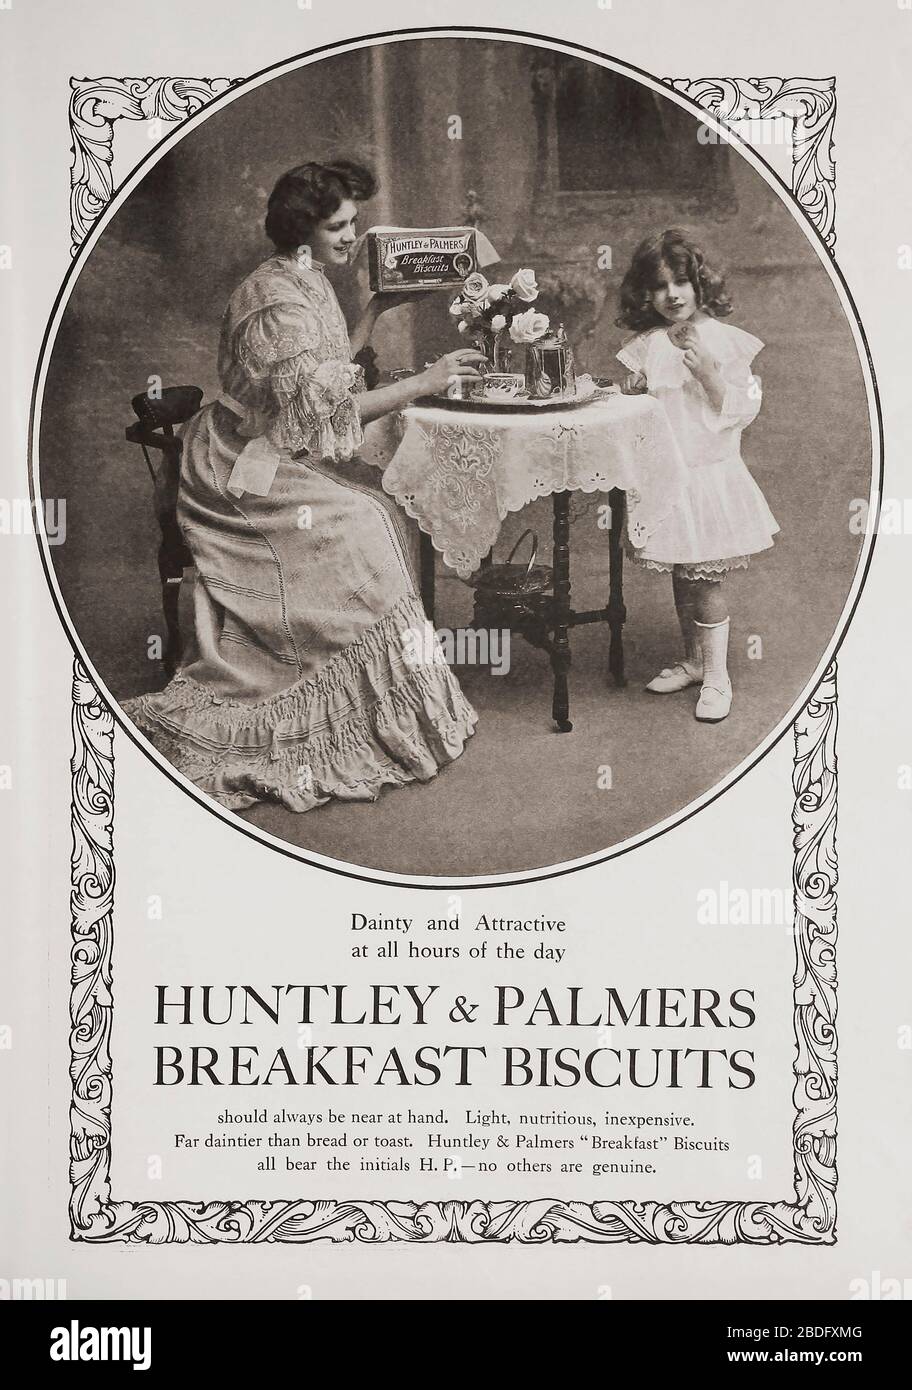 EDITORIALE Annuncio per Huntley & Palmers Breakfast Biscuits nell'edizione di giugno 1907 di The Graphic, un quotidiano illustrato settimanale, pubblicato a Londra dal 1869 al 1932. Foto Stock